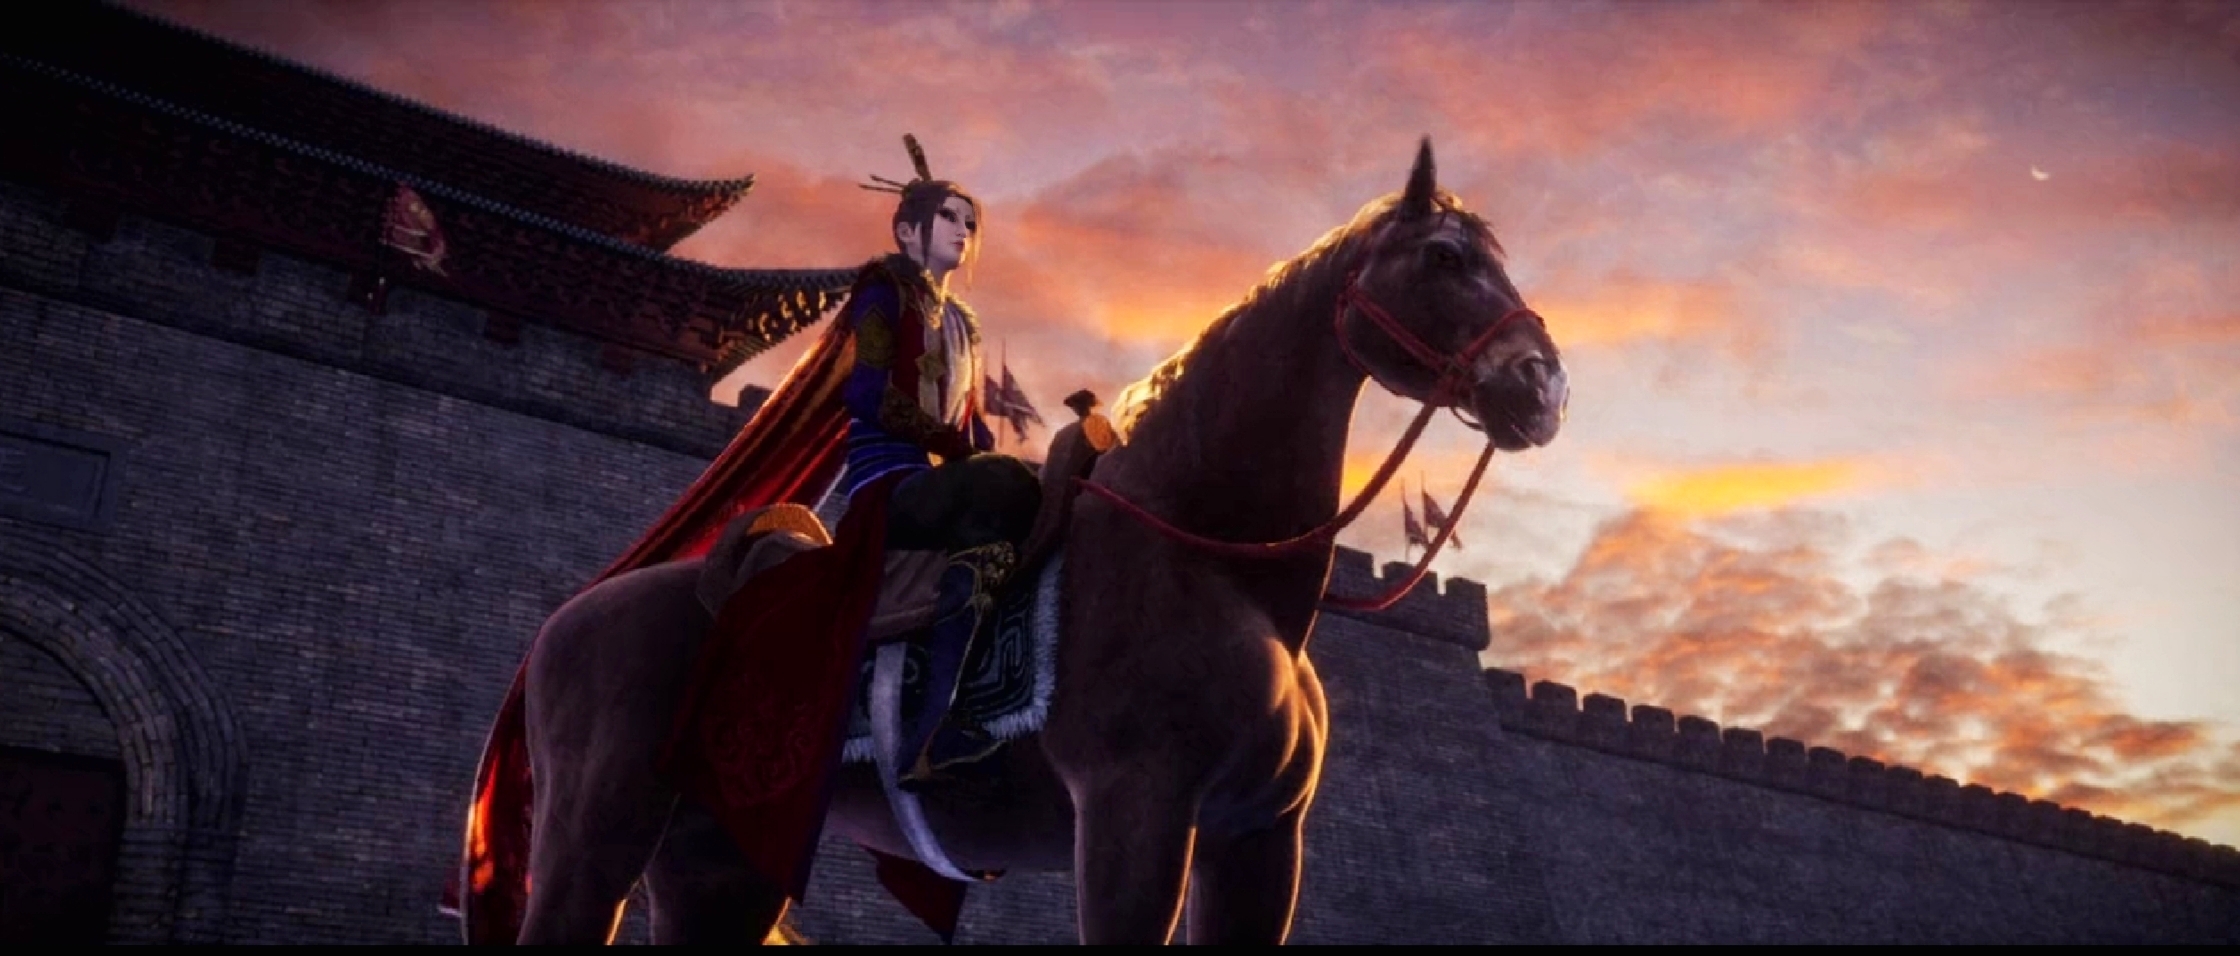 Anime 2240x956 Rocen Hua Jianghu women horse war women with horse fantasy girl